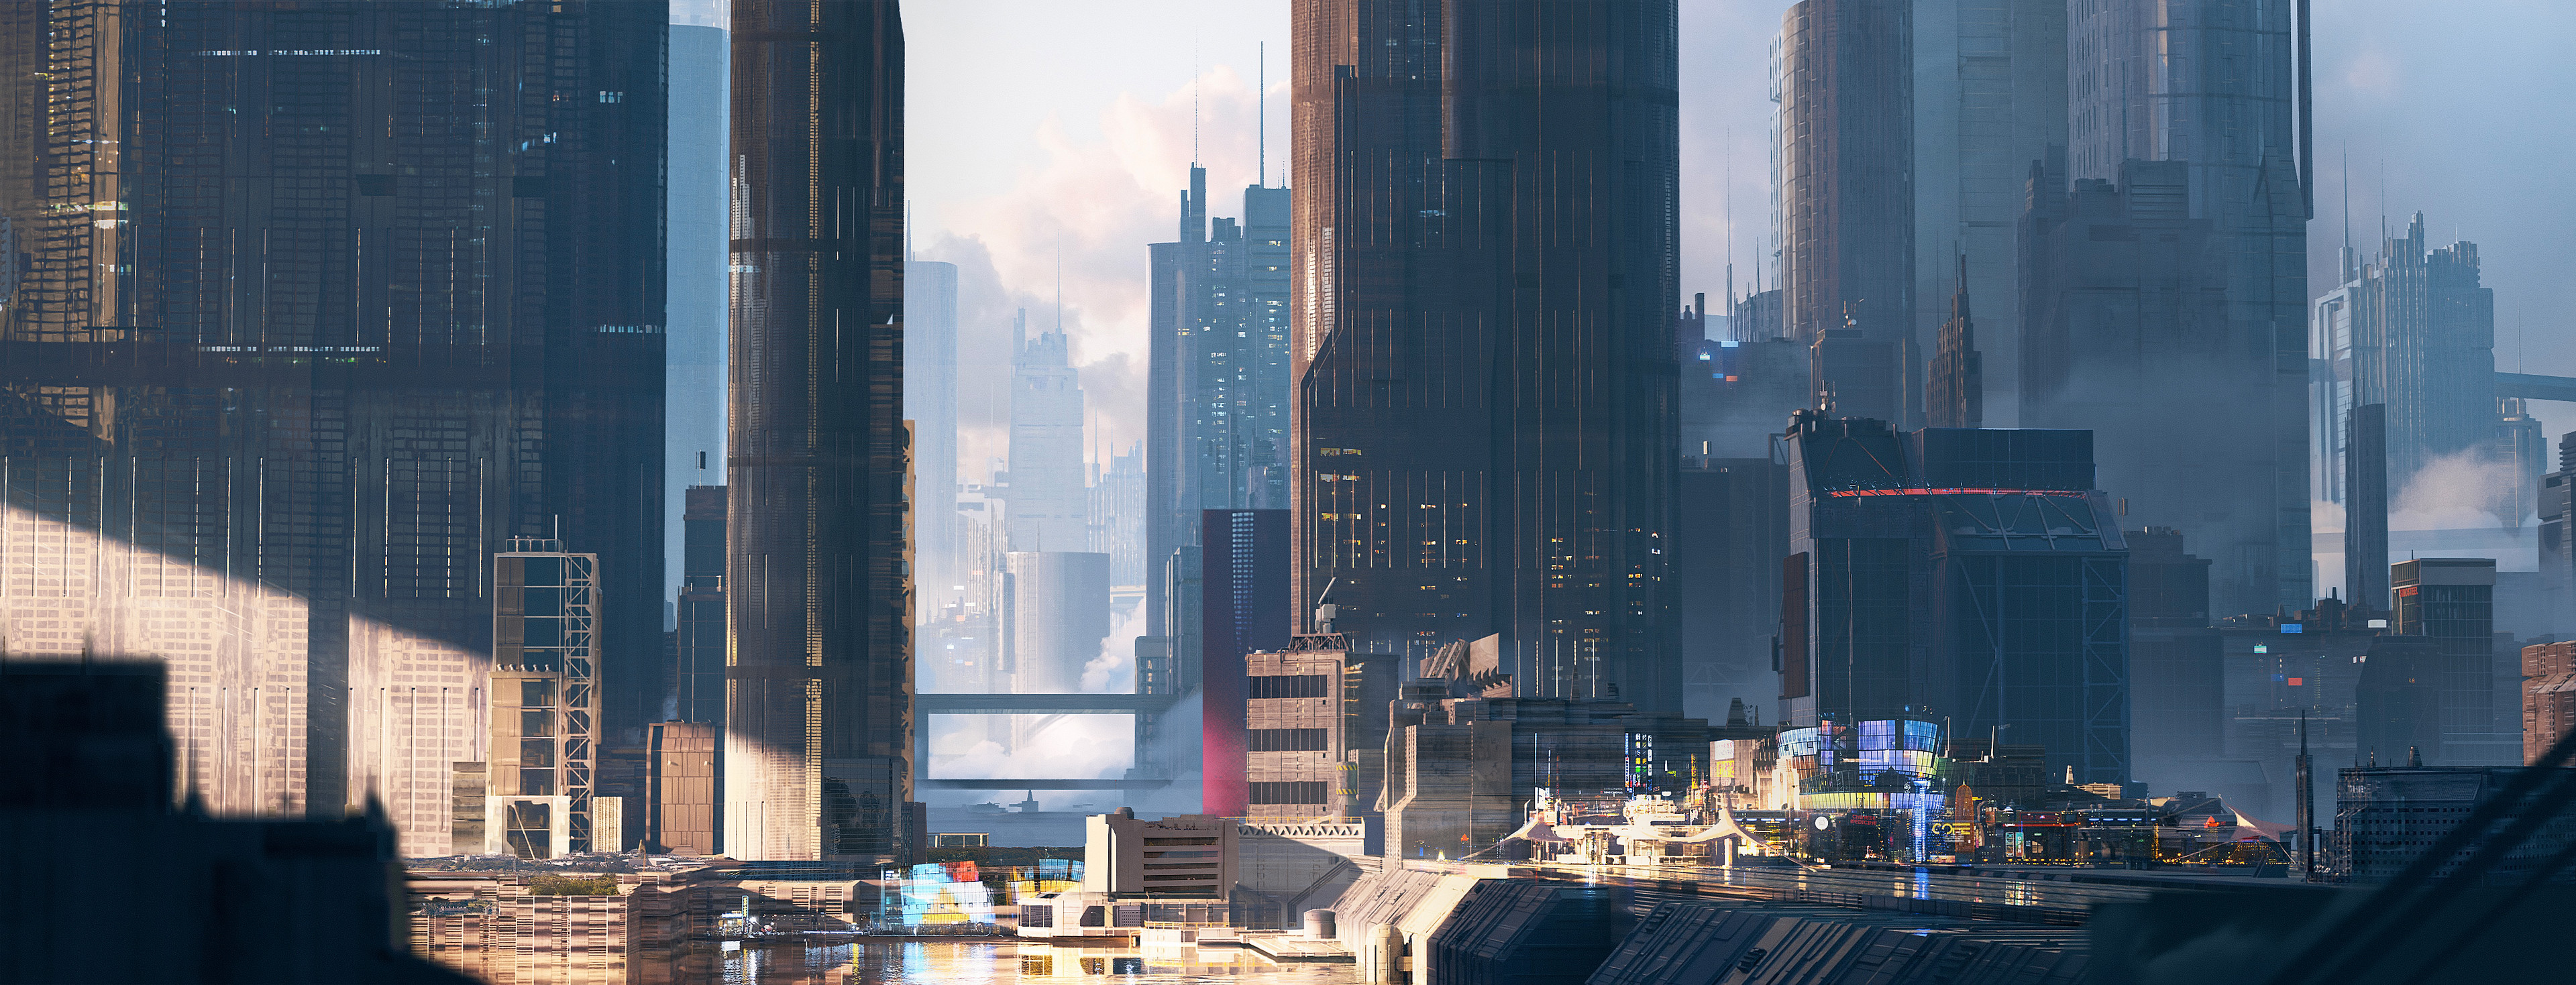 General 3840x1469 ultrawide cityscape cyberpunk 4K futuristic futuristic city